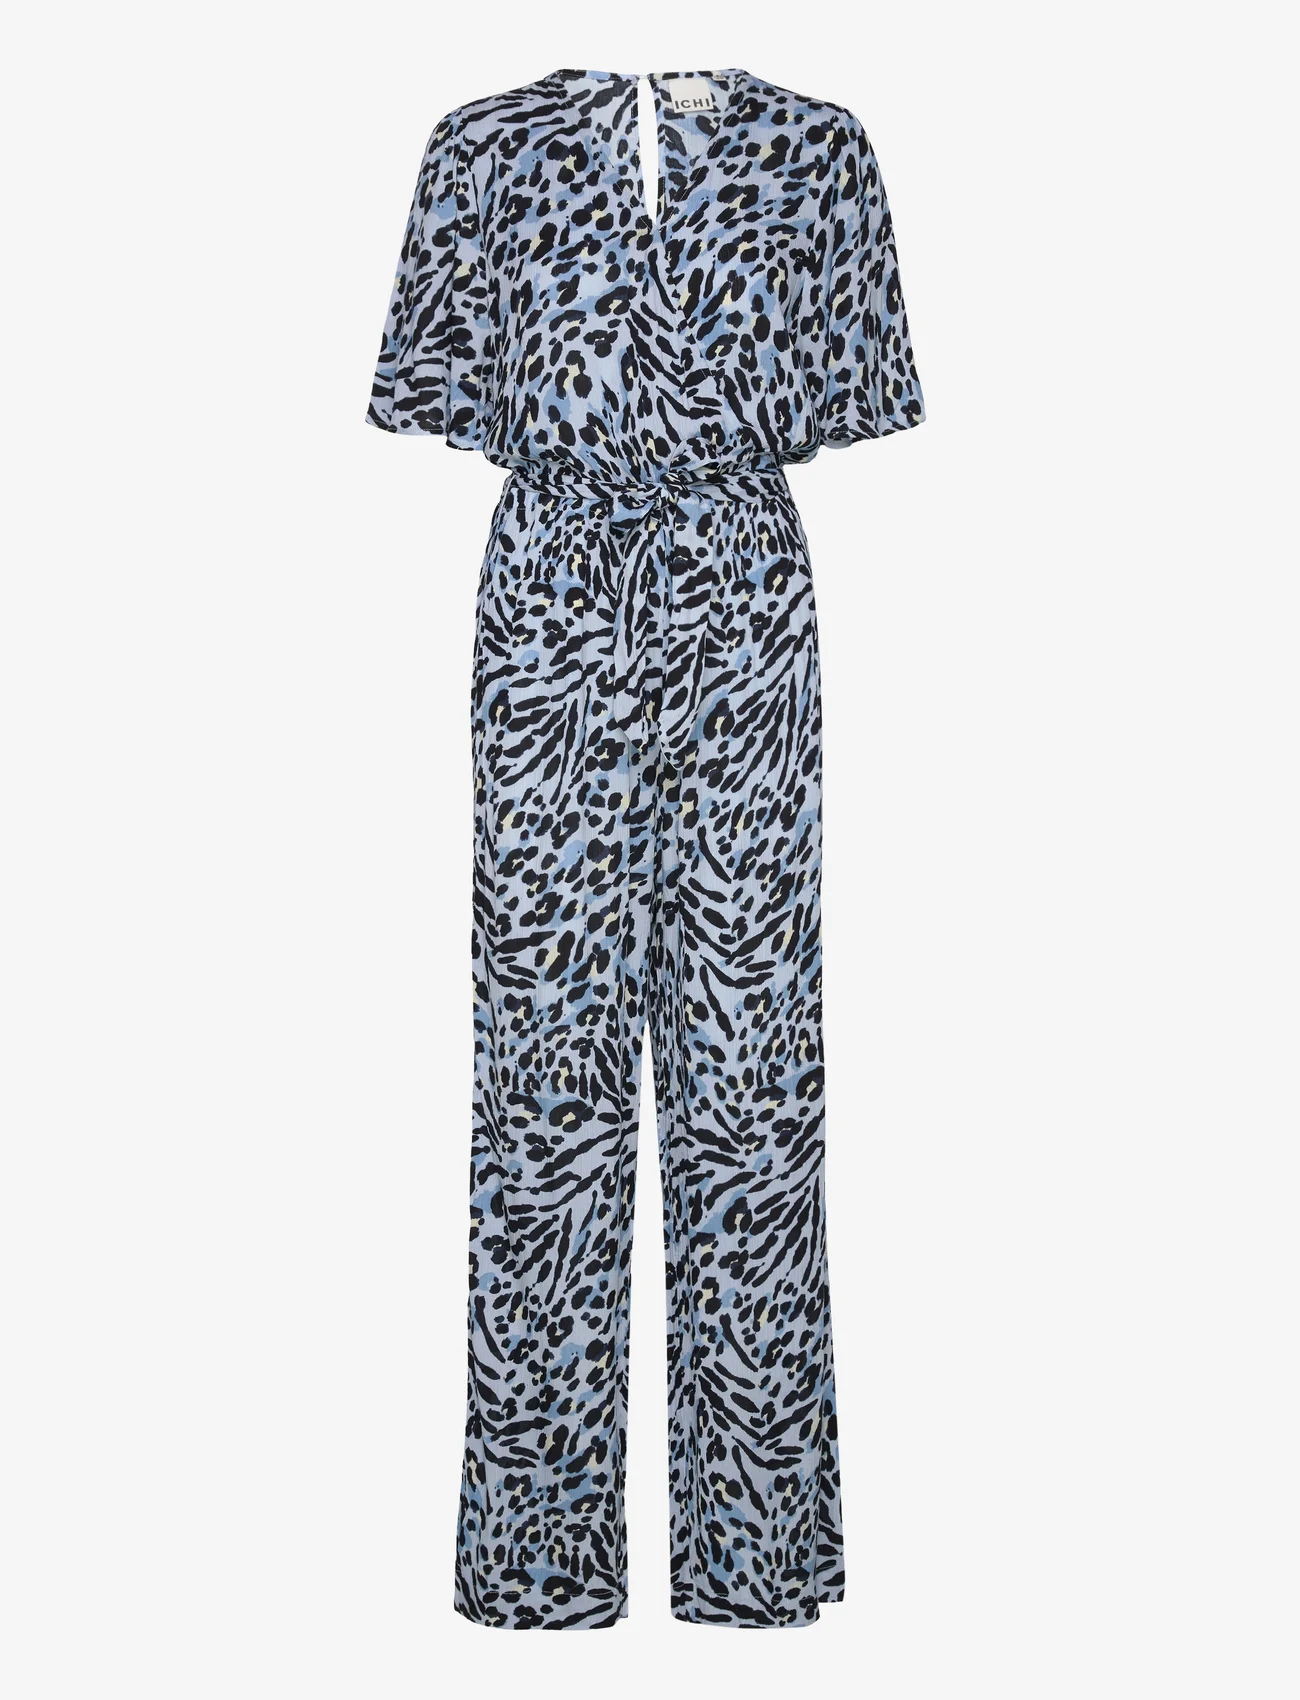 ICHI - IHMARRAKECH AOP JS FL3 - jumpsuits - little boy blue leo print - 0